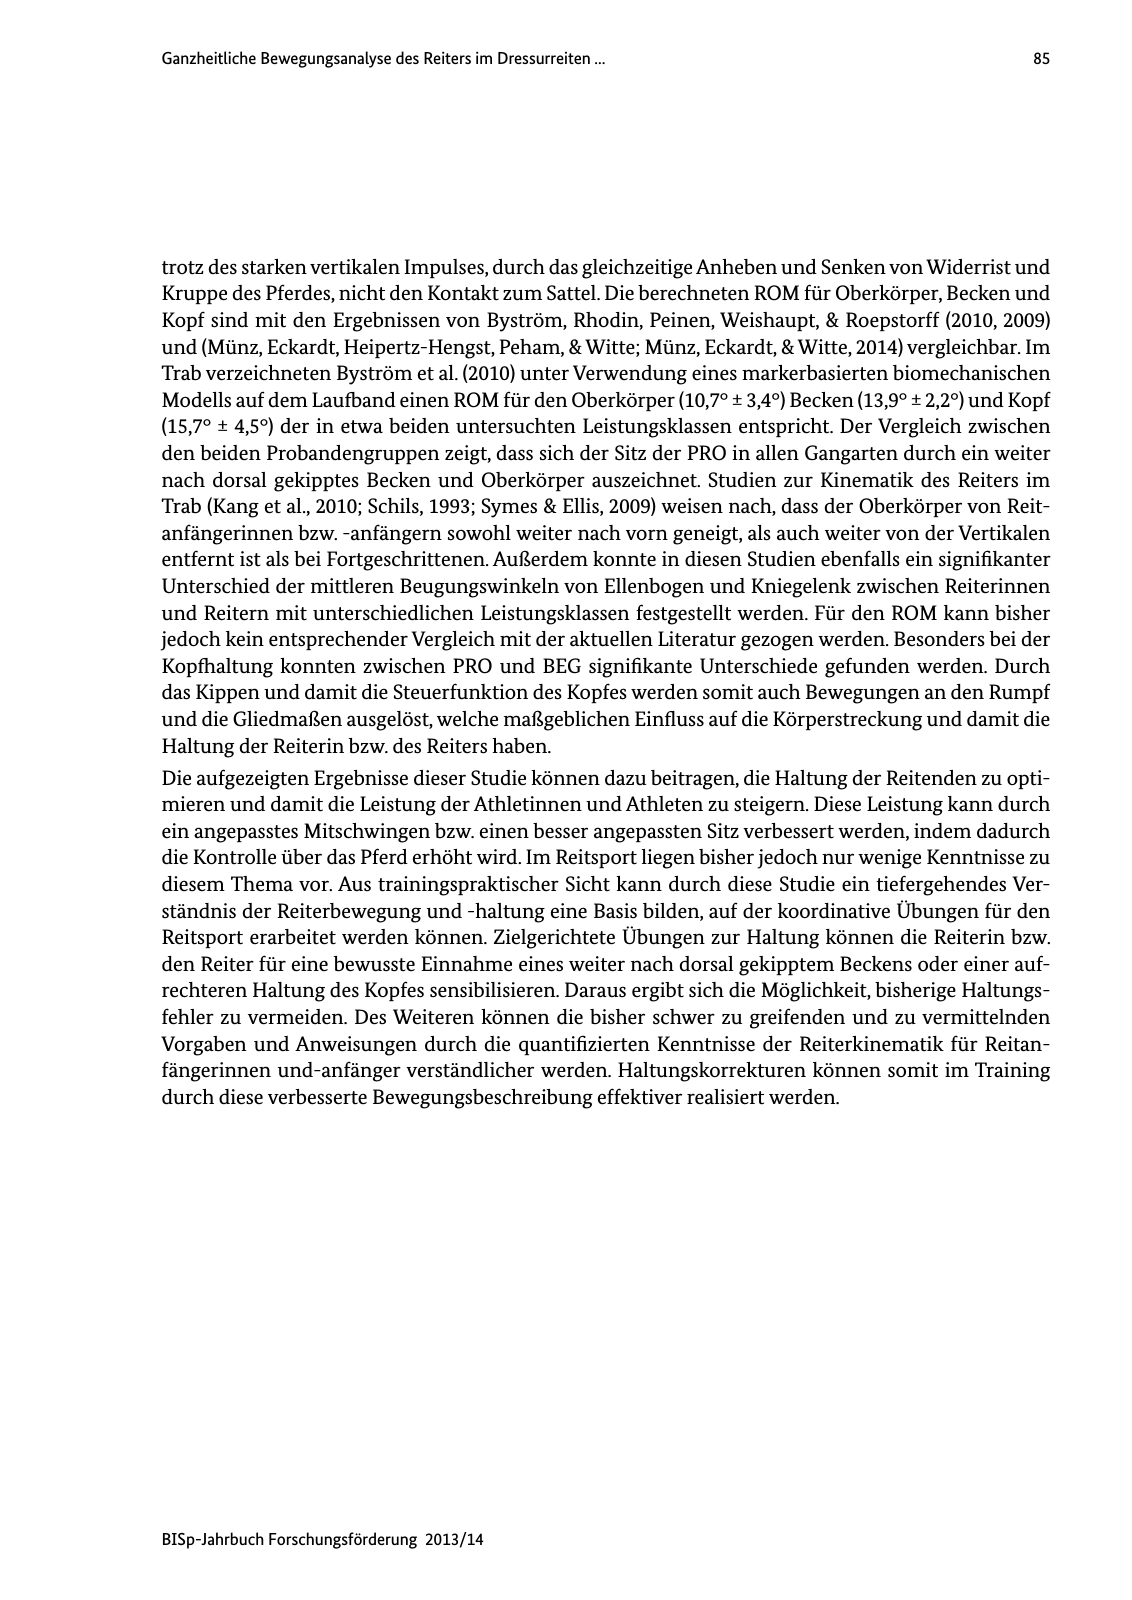 Vorschau BISp-Jahrbuch Forschungsförderung 2013/14 Seite 86